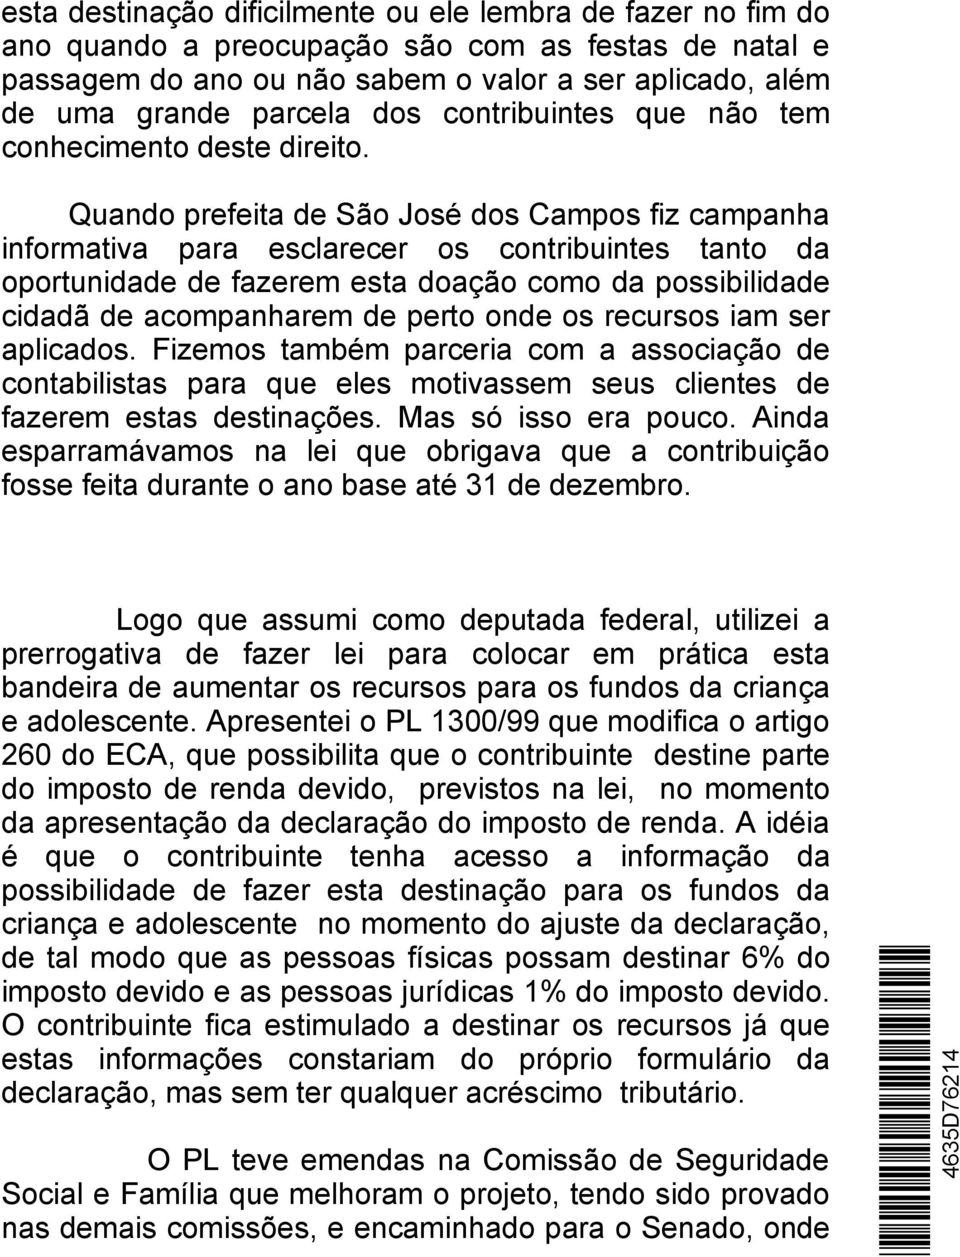 Quando prefeita de São José dos Campos fiz campanha informativa para esclarecer os contribuintes tanto da oportunidade de fazerem esta doação como da possibilidade cidadã de acompanharem de perto